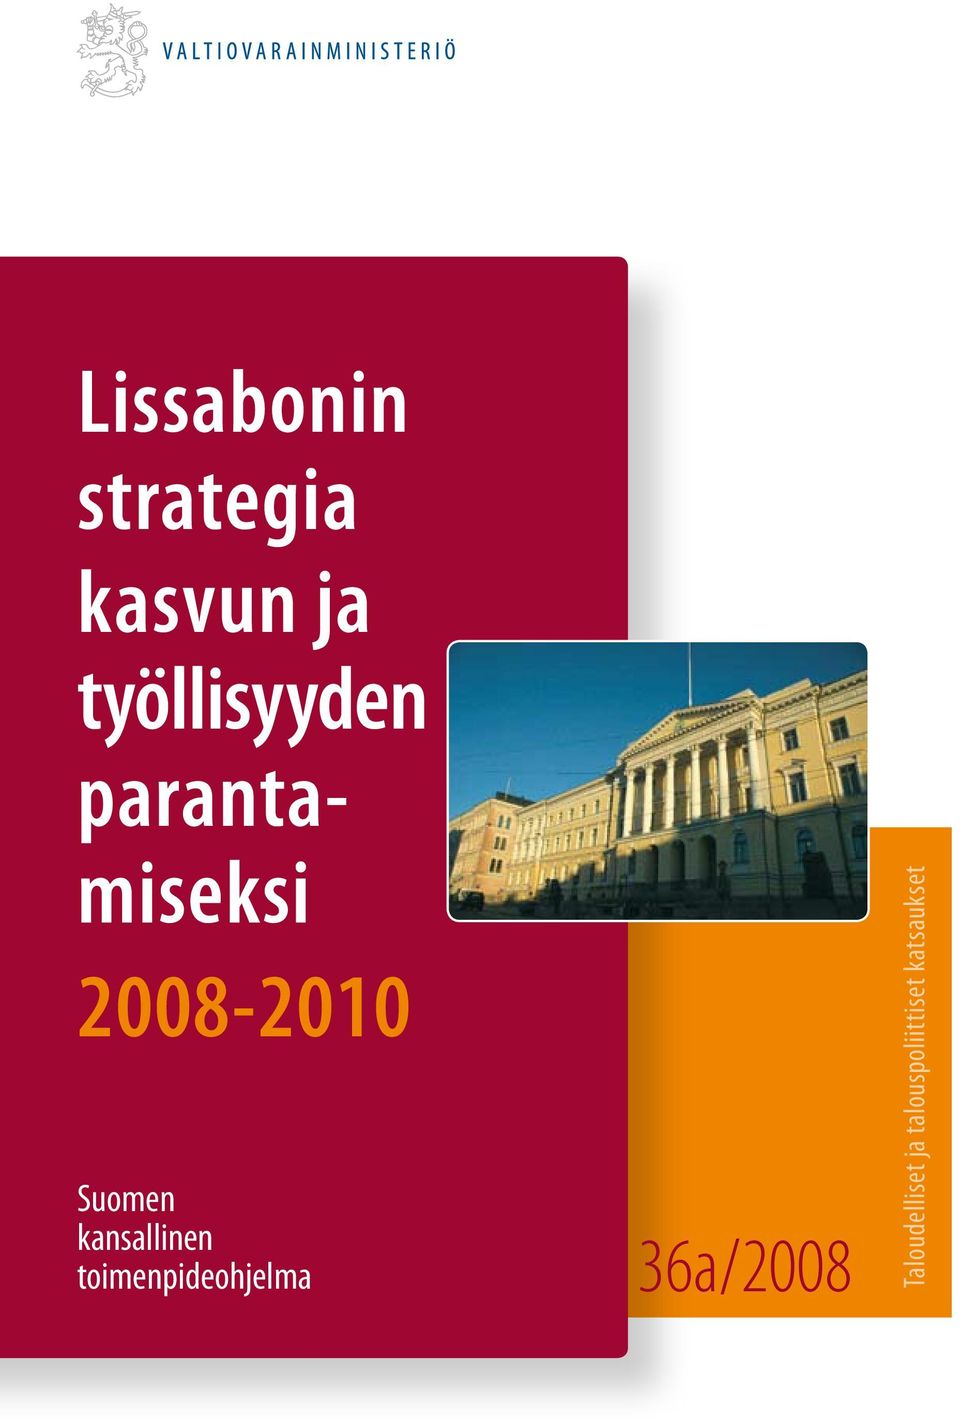 Suomen kansallinen toimenpideohjelma